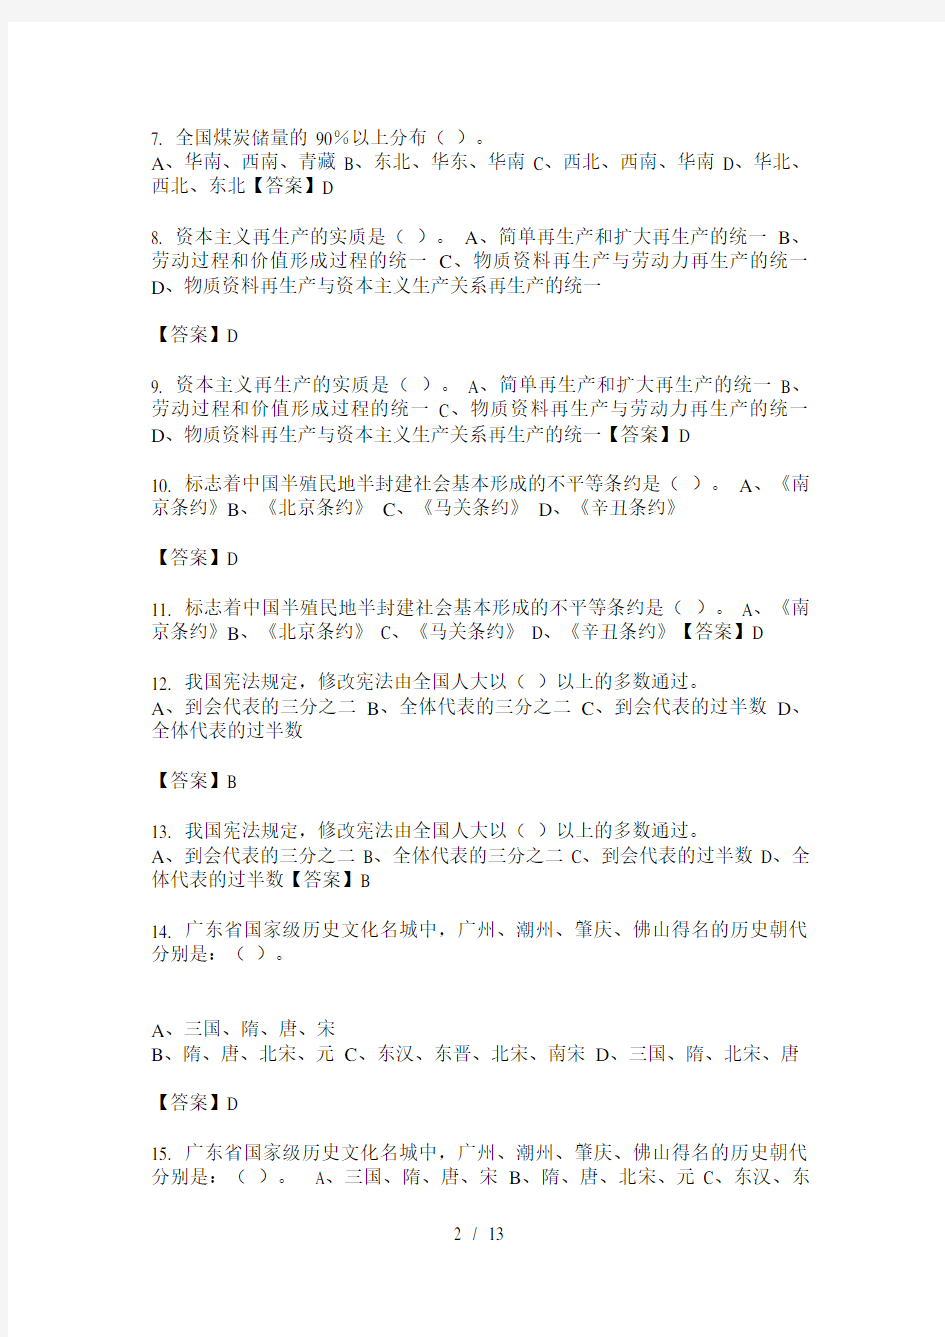 广东省事业单位类单位考试《综合知识和能力素质》